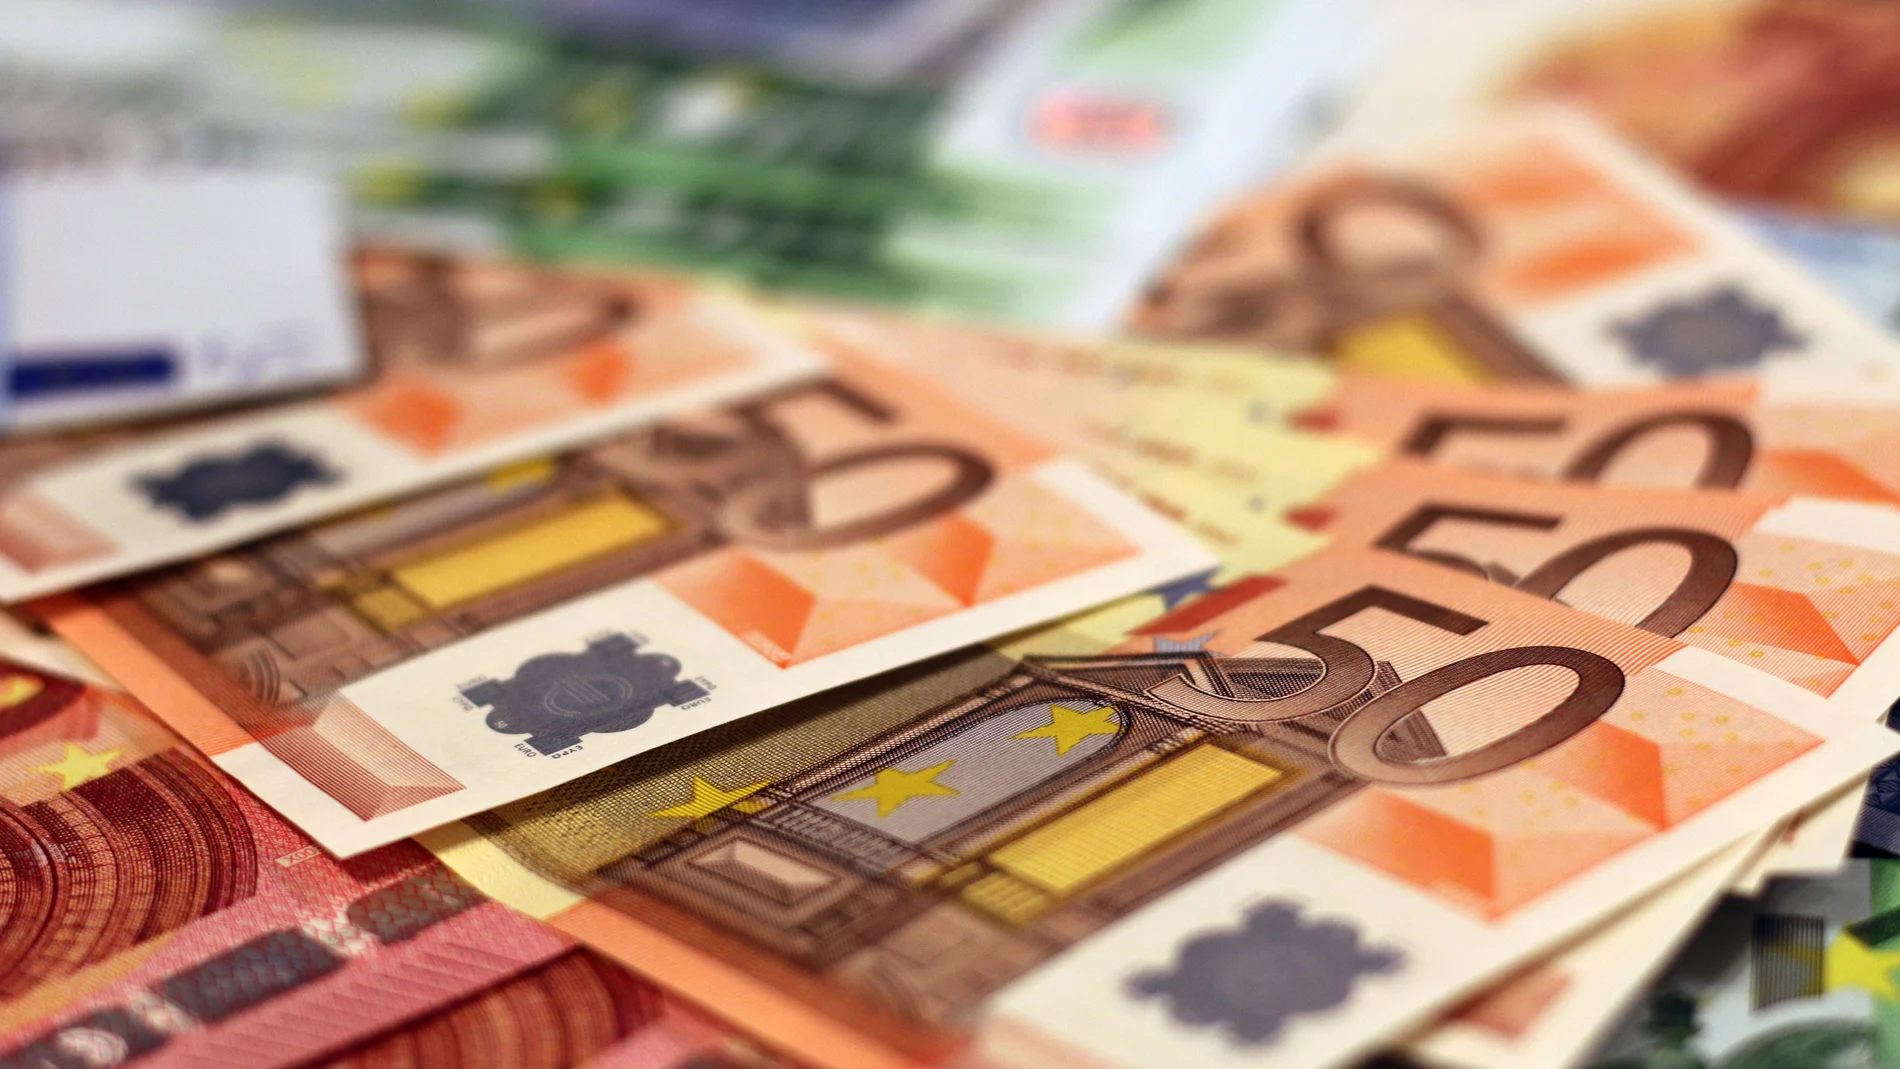 La cantidad de dinero que el Banco de España recomienda guardar en casa por posibles emergencias